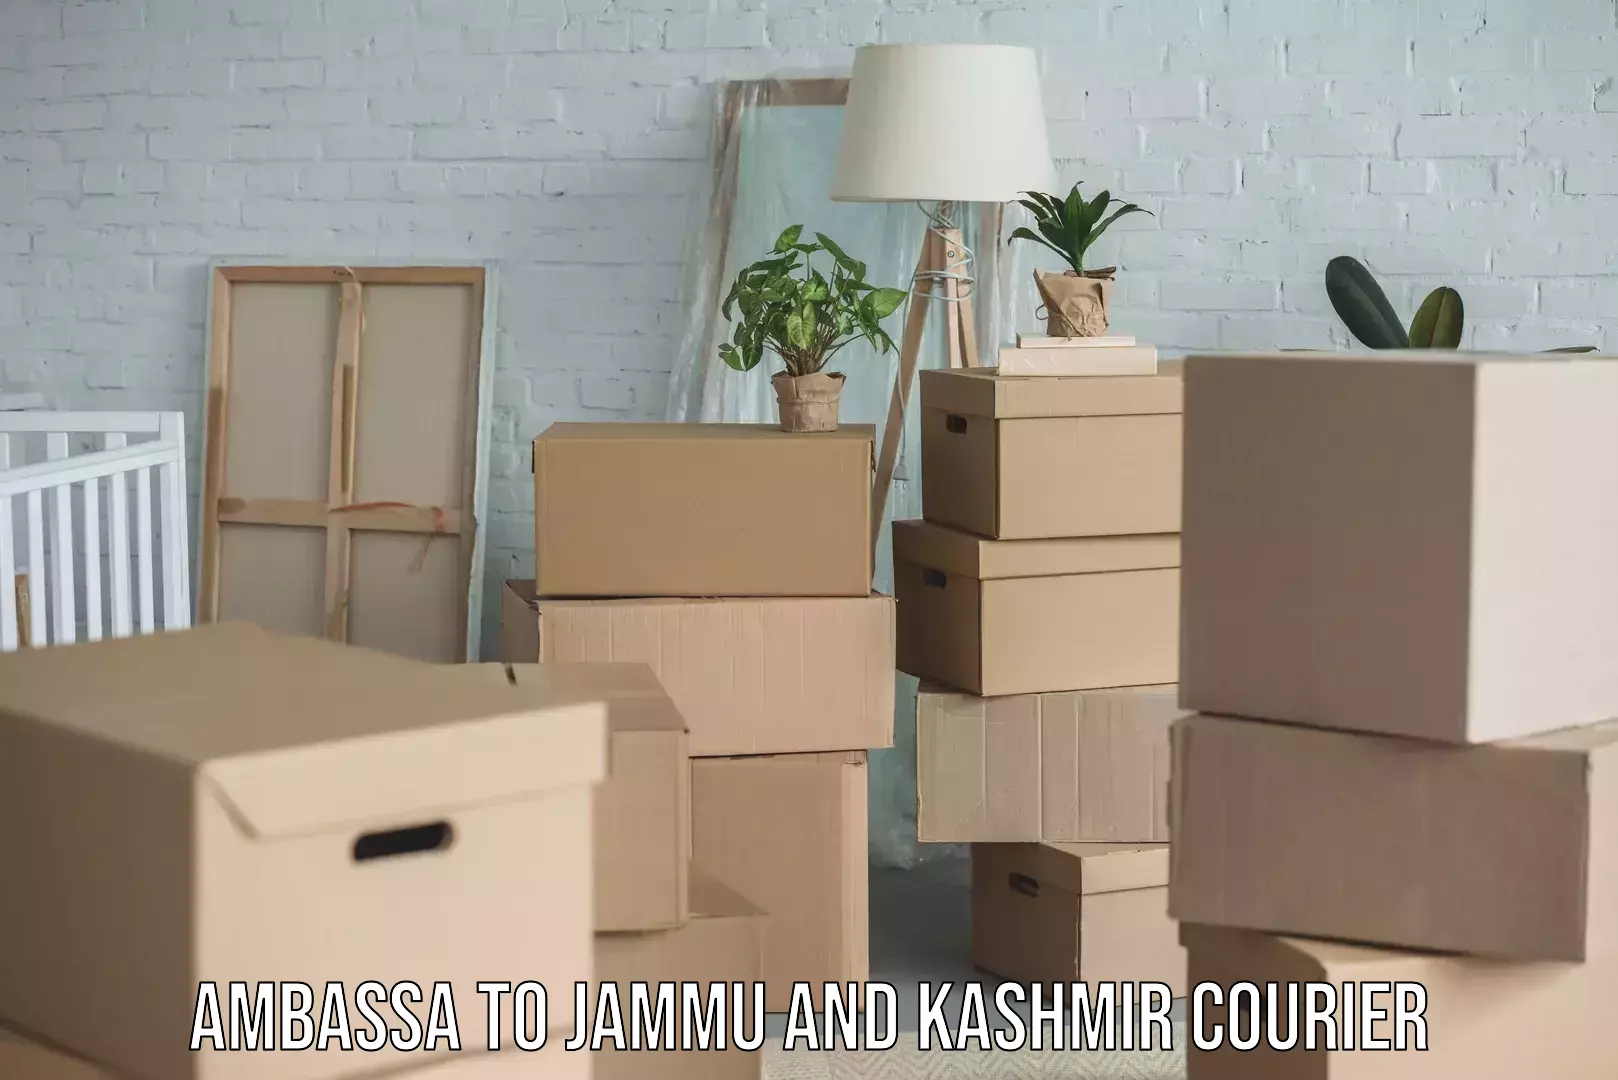 On-demand shipping options Ambassa to Jammu and Kashmir